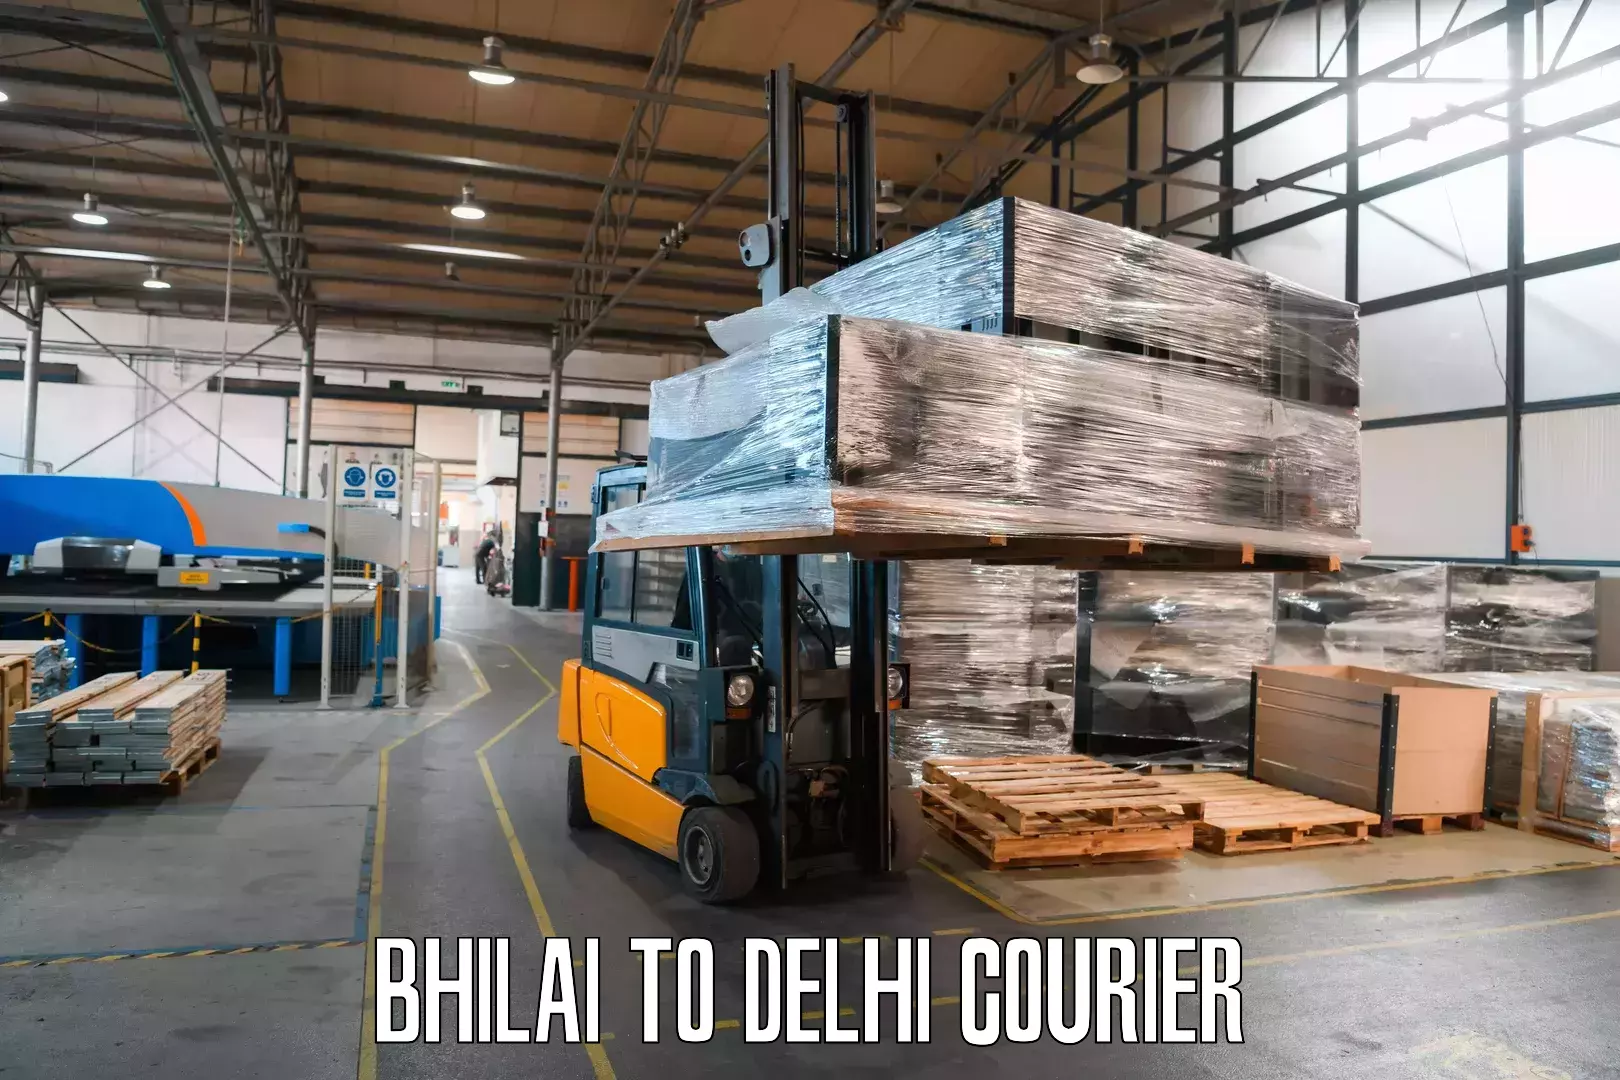 Express postal services Bhilai to Jamia Millia Islamia New Delhi